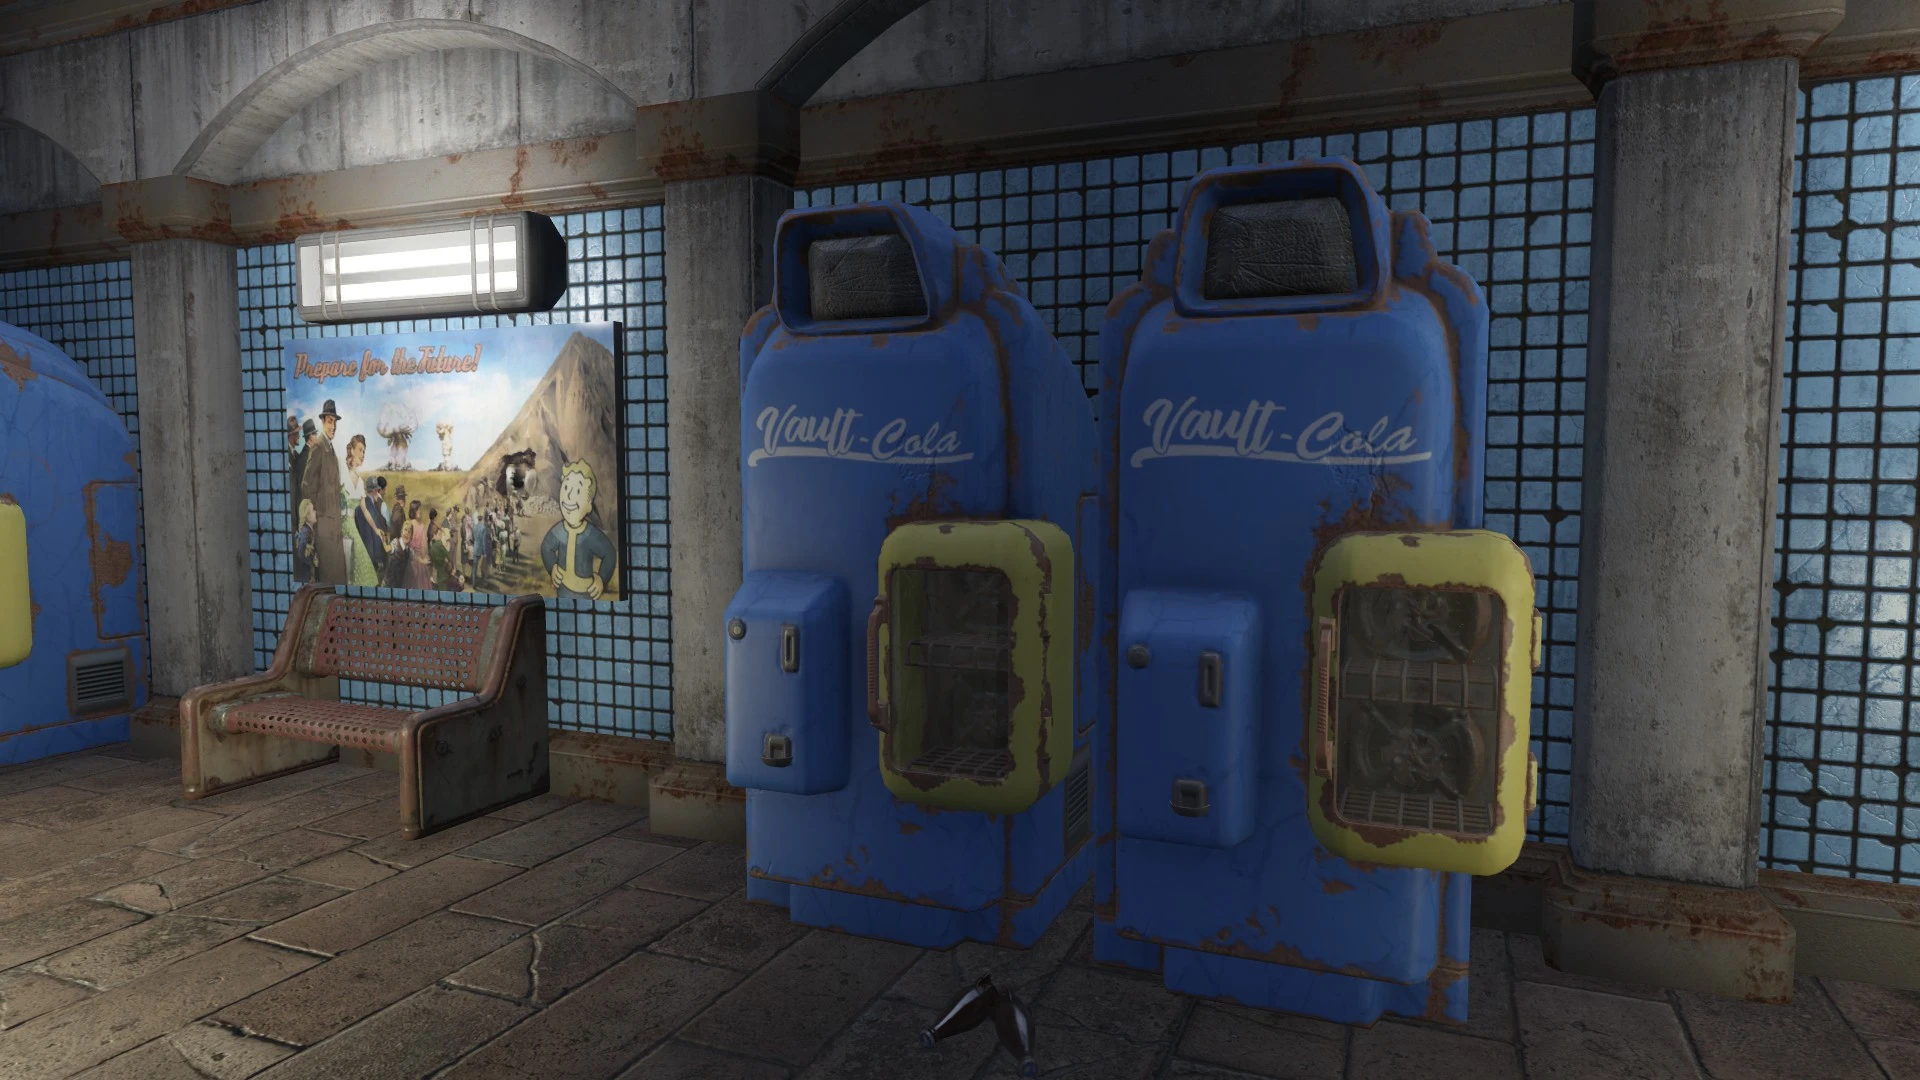 Vault Cola vending machines. 